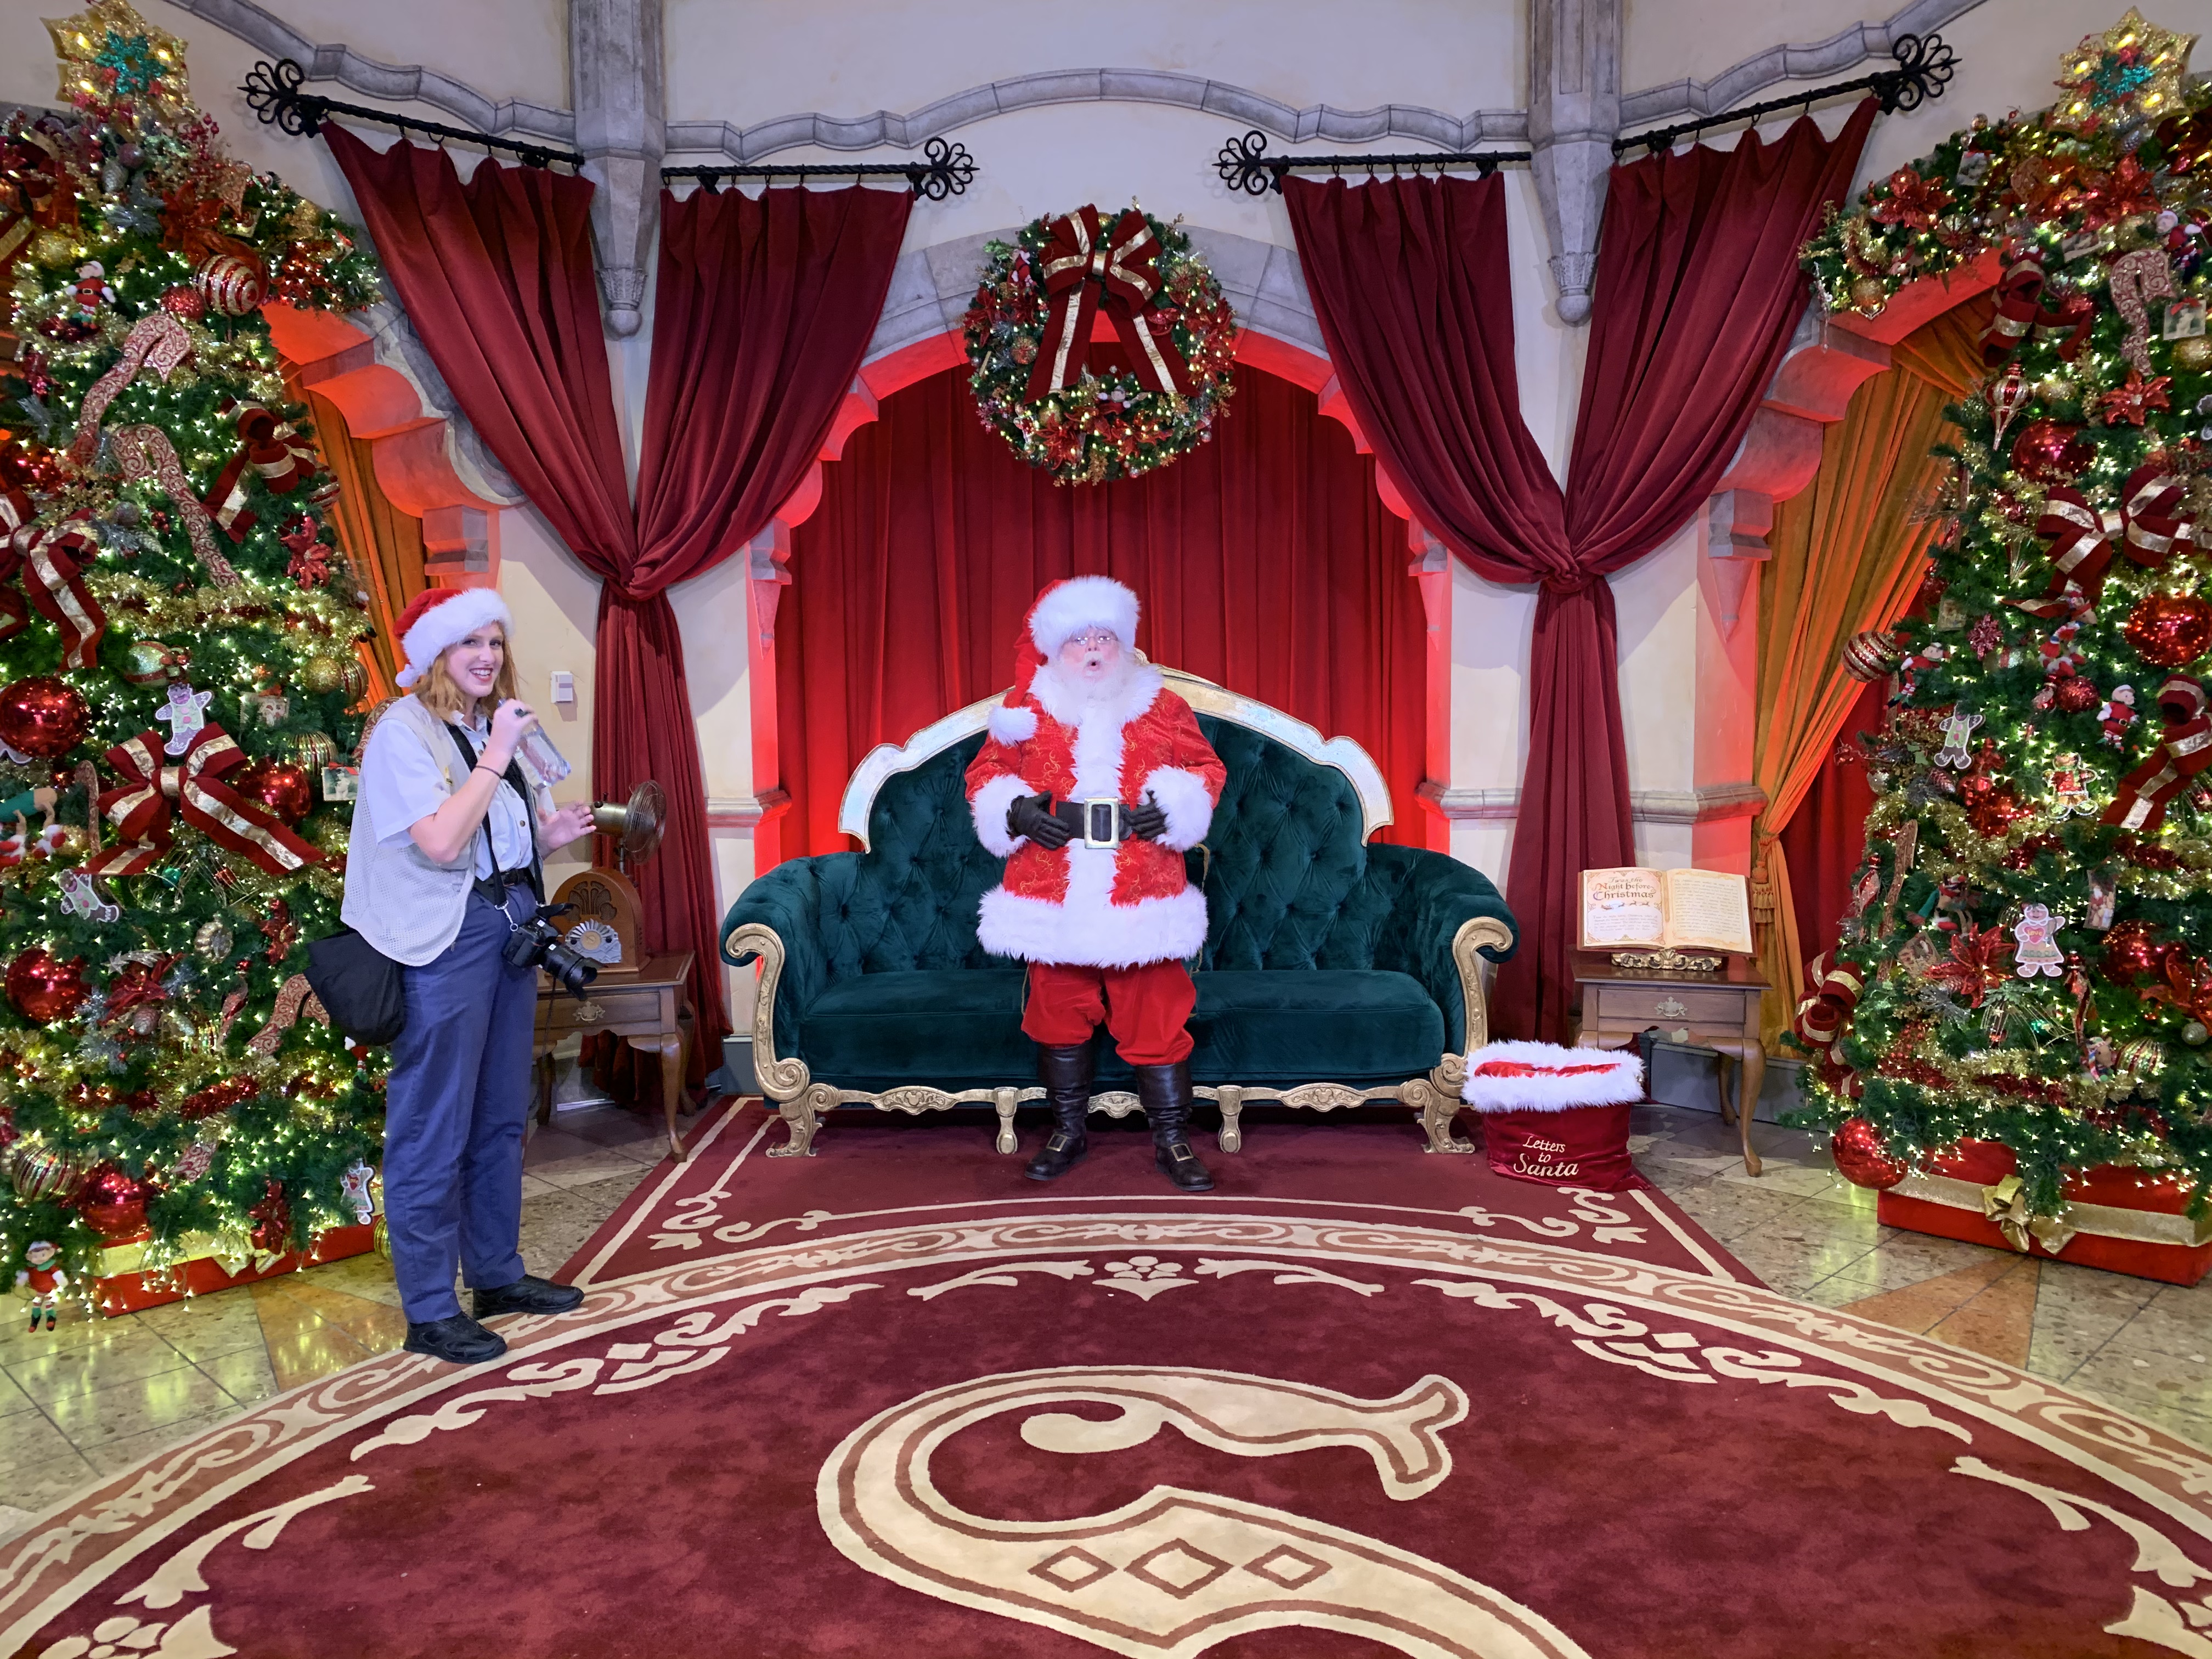 PHOTOS Santa Claus Returns to Sunset Boulevard for Meet and Greet